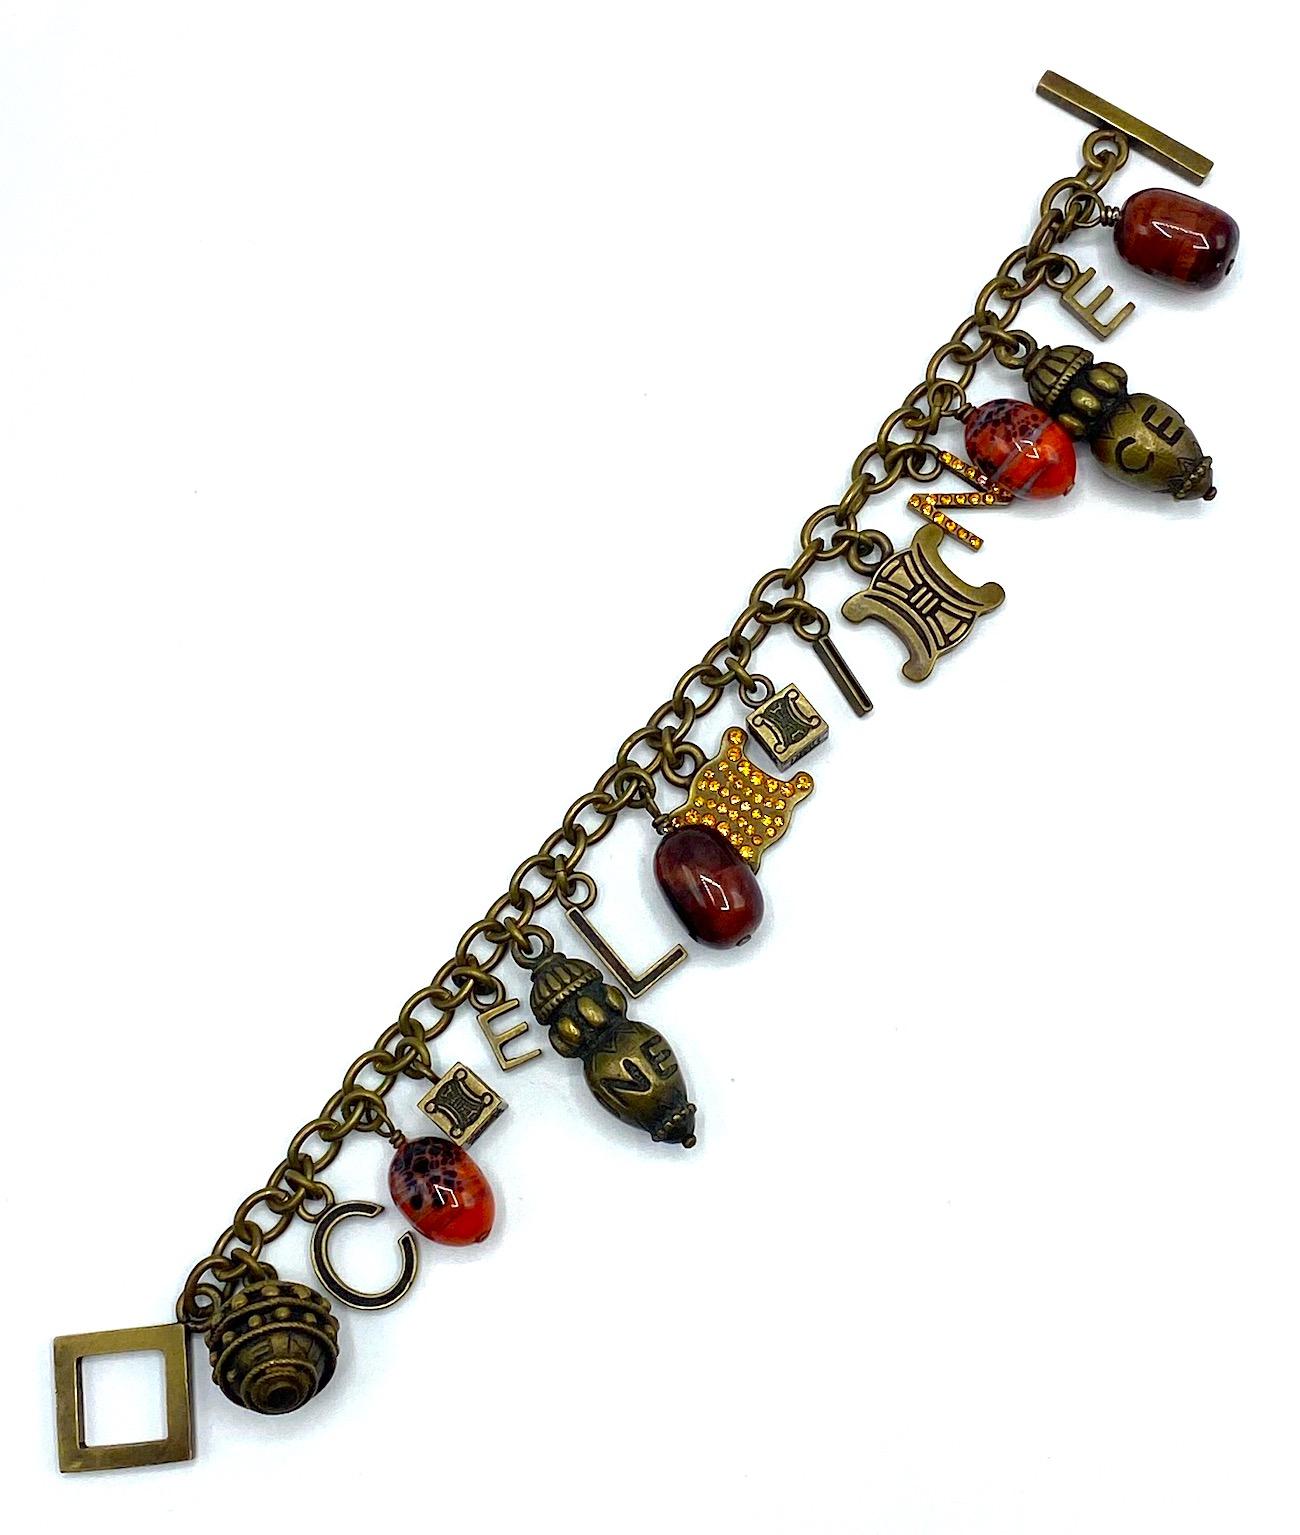 Un magnifique bracelet à breloques entièrement chargé de Céline des années 1990. Il a une finition patinée bronze antique et comporte 17 breloques. Six des breloques sont des lettres qui épellent Céline. Les quatre breloques sont des perles de verre